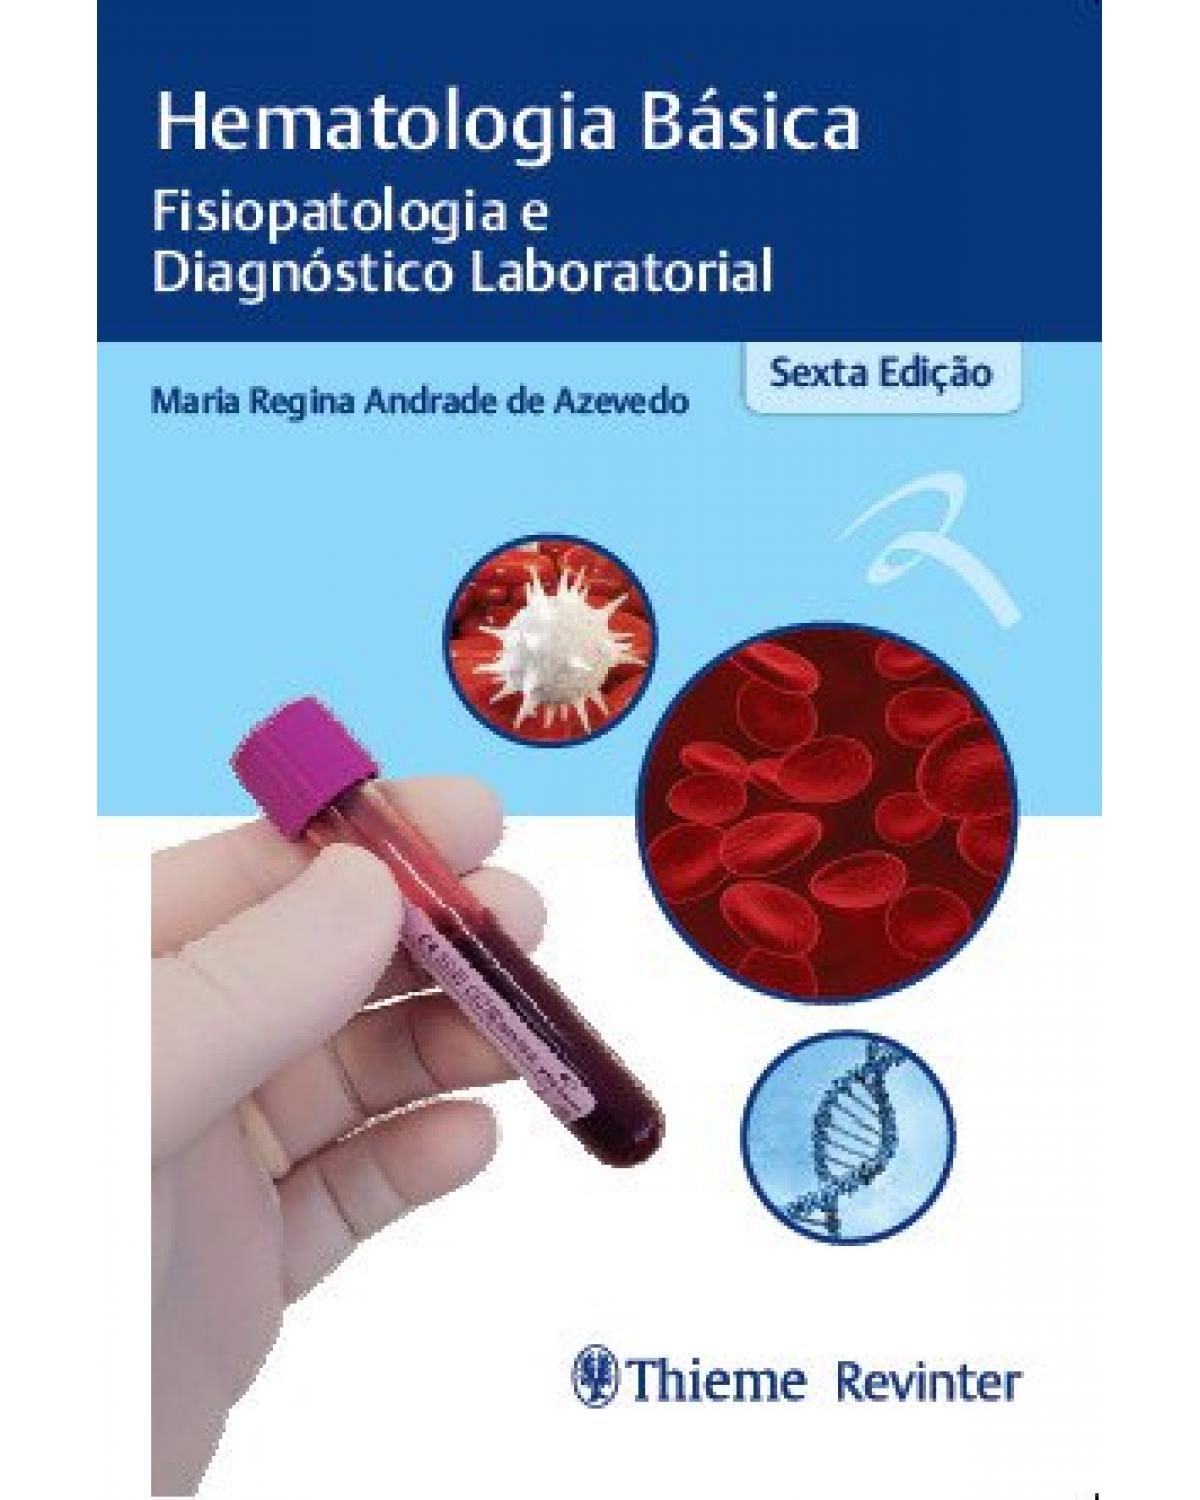 Hematologia básica: fisiopatologia e diagnóstico laboratorial - 6ª Edição | 2019